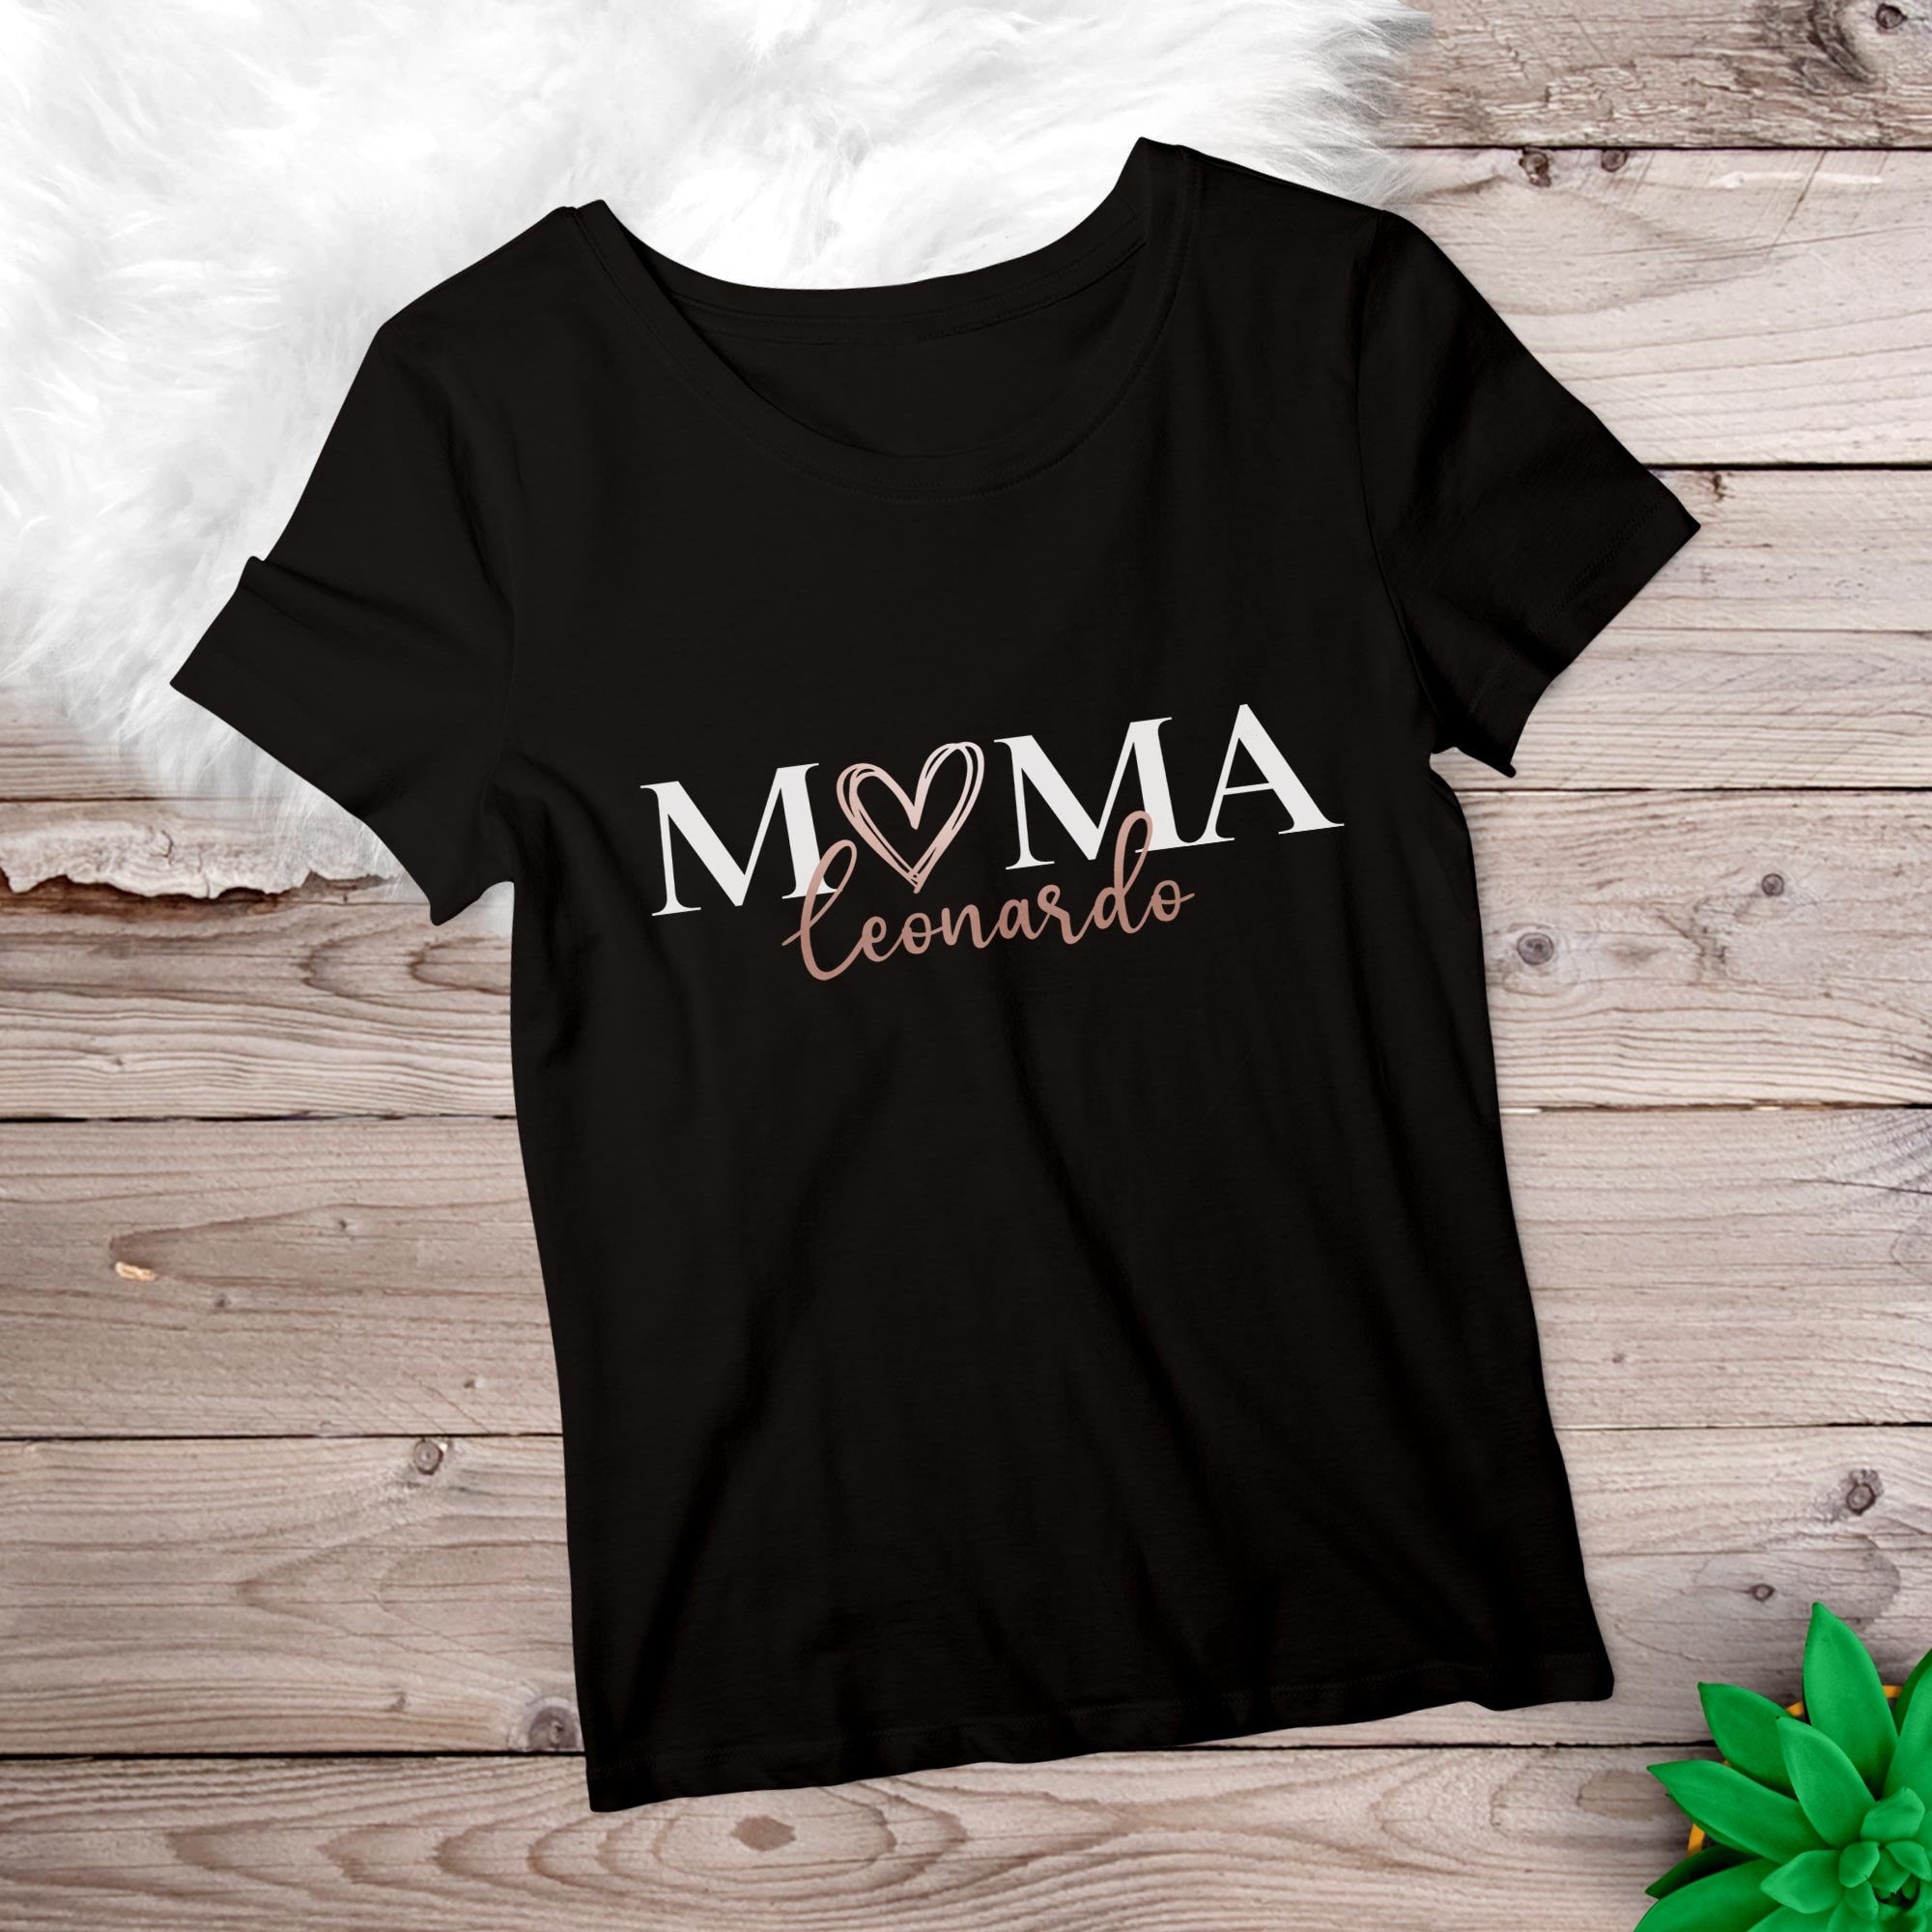 Mama T-Shirt Herz, personalisiert mit Namen